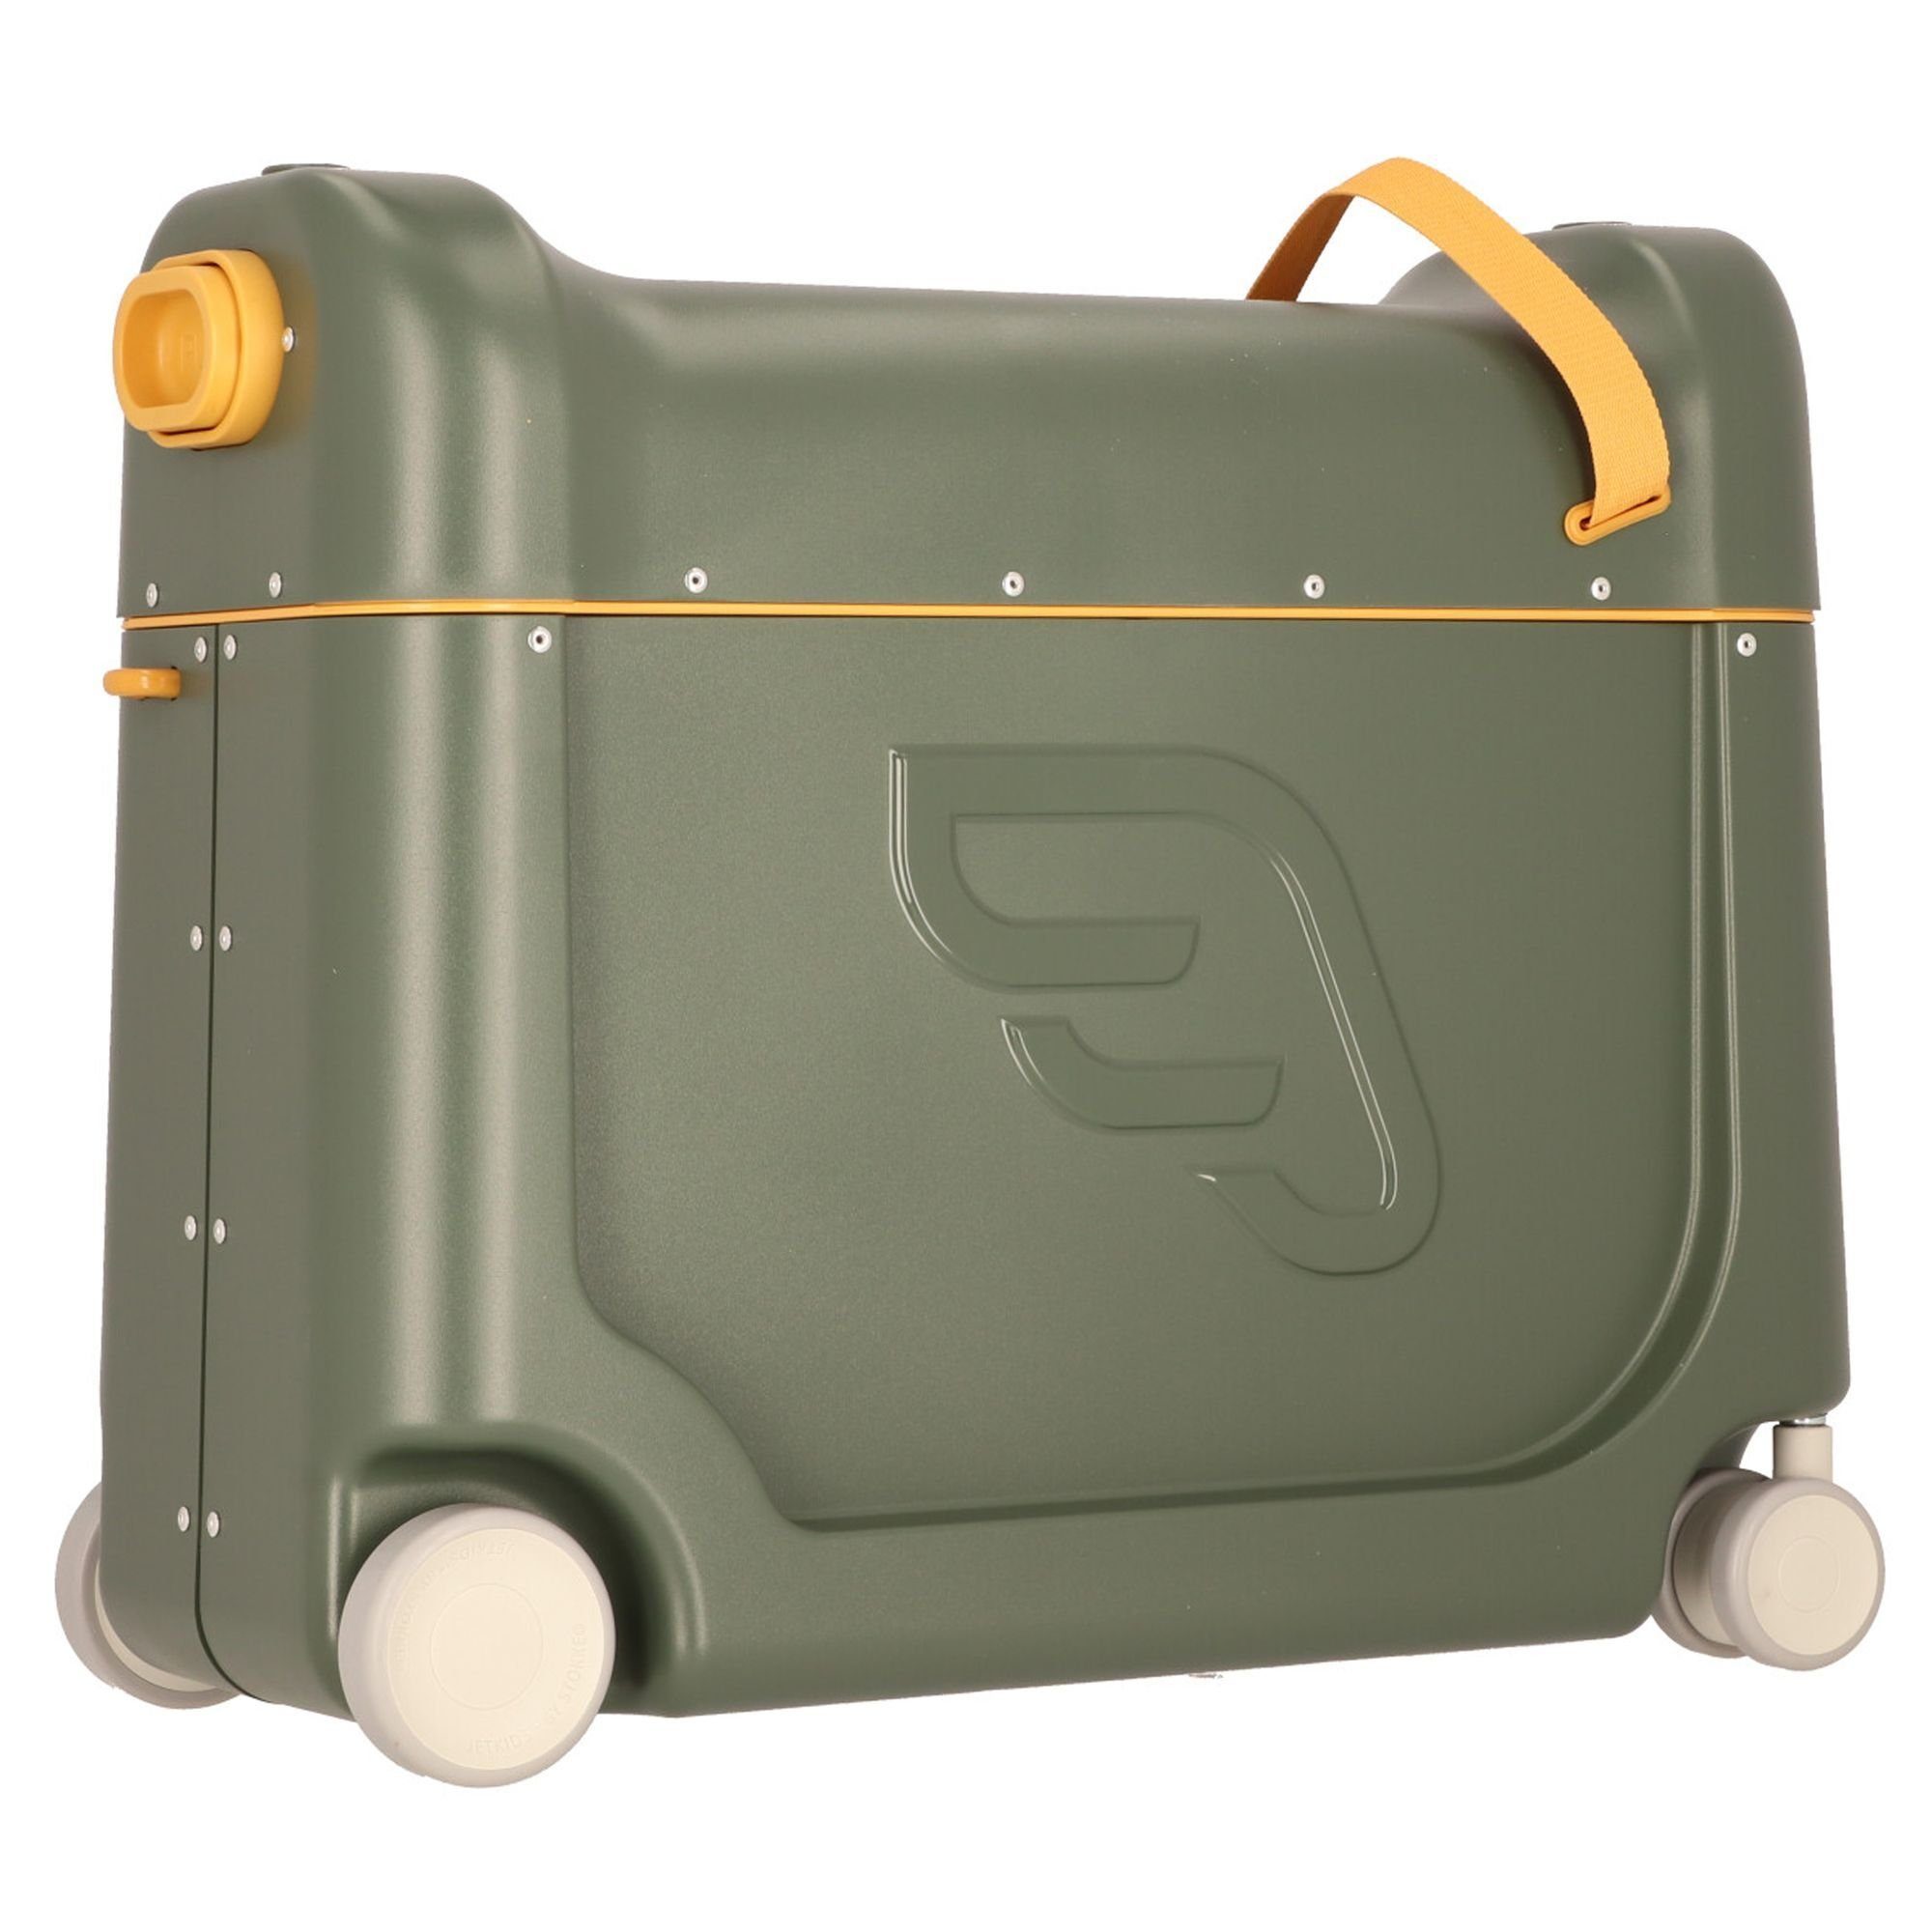 Stokke Jetkids Kinderkoffer BedBox, 4 Rollen, olive golden ABS